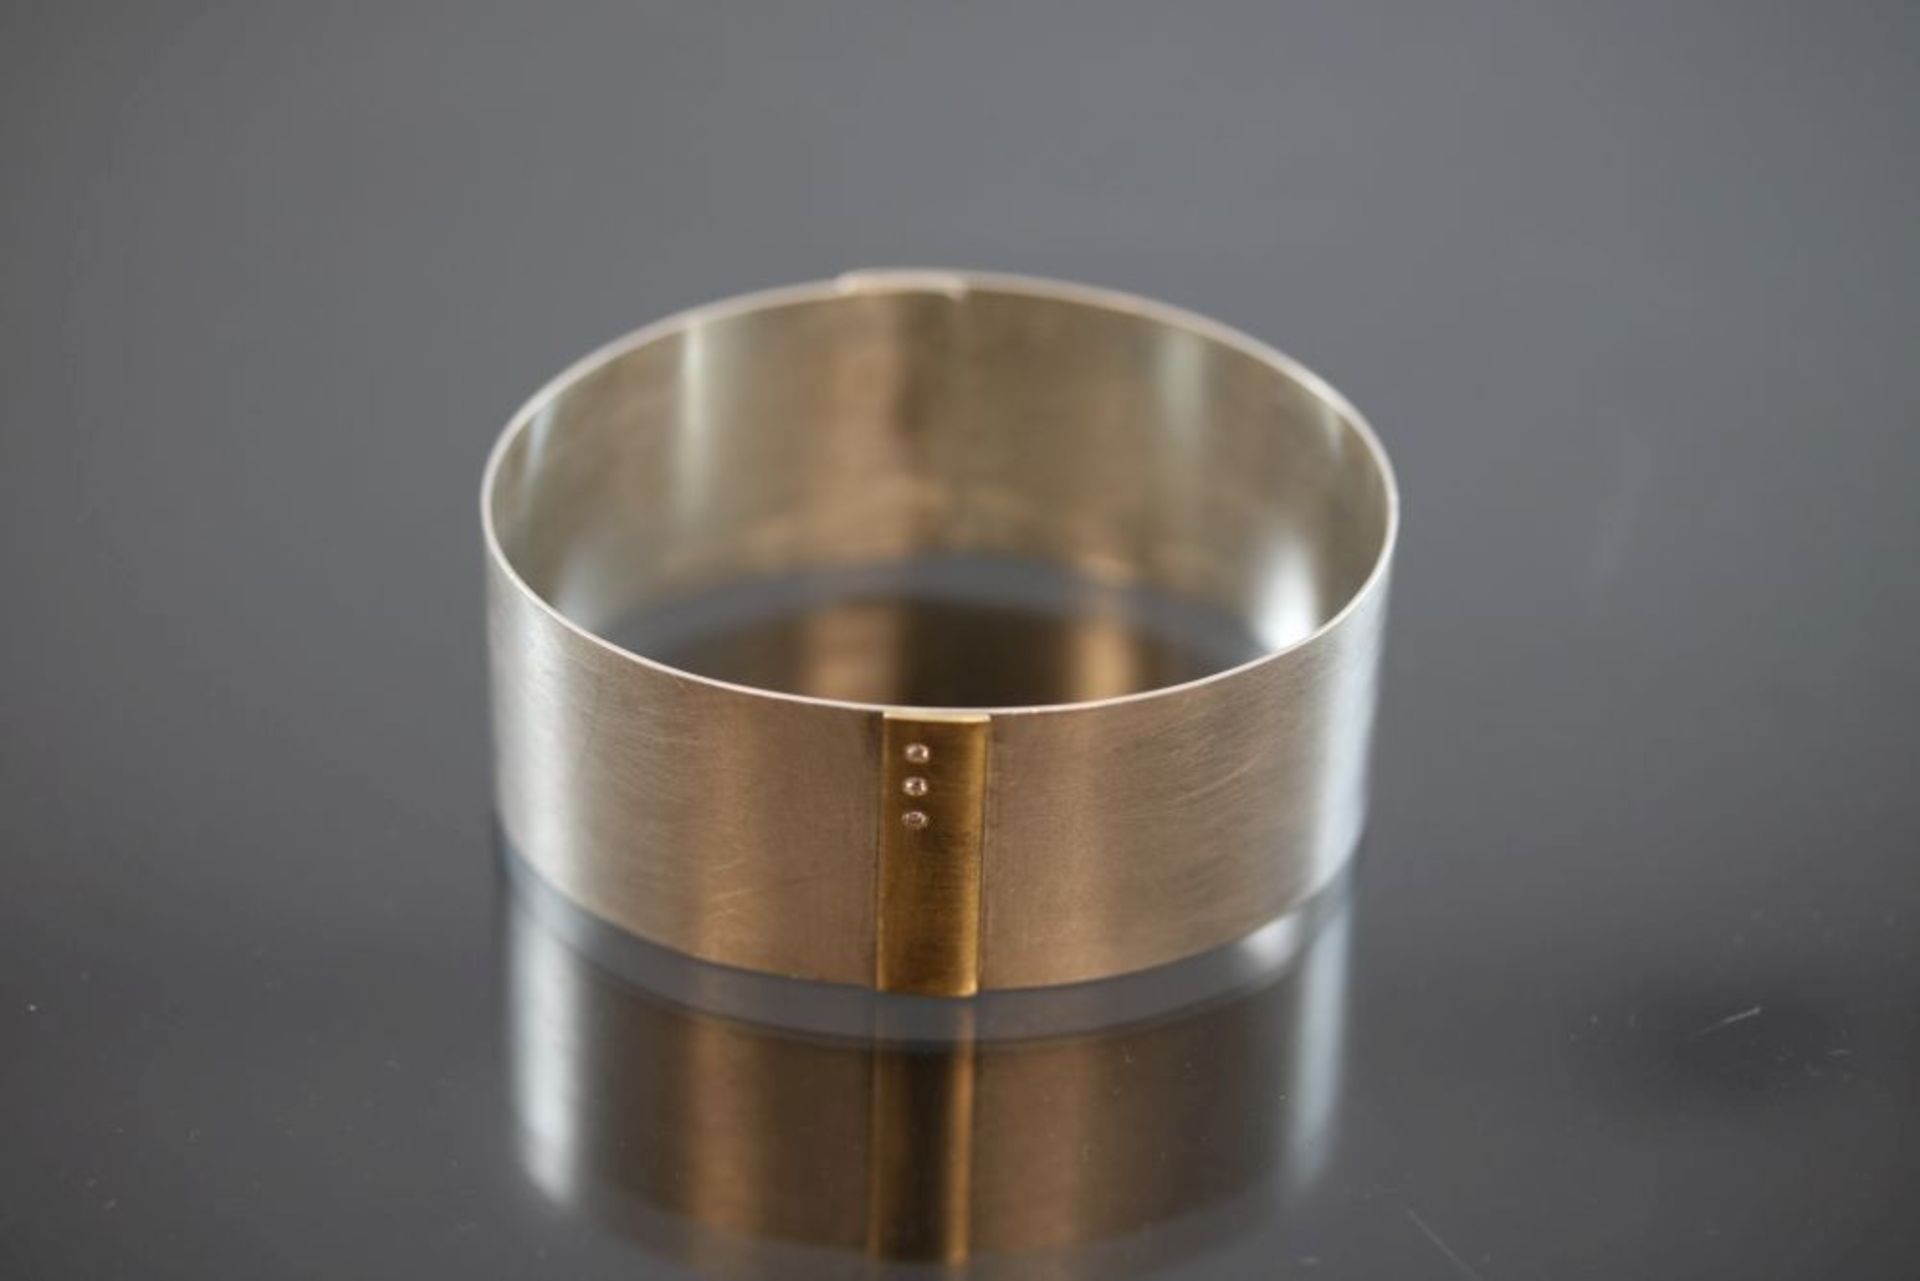 Design-Brillant-Armreif, Silber/750 Gold30 Gramm 3 Brillanten, 0,03 ct., tw/vsi. Breite: 2,5 cm,